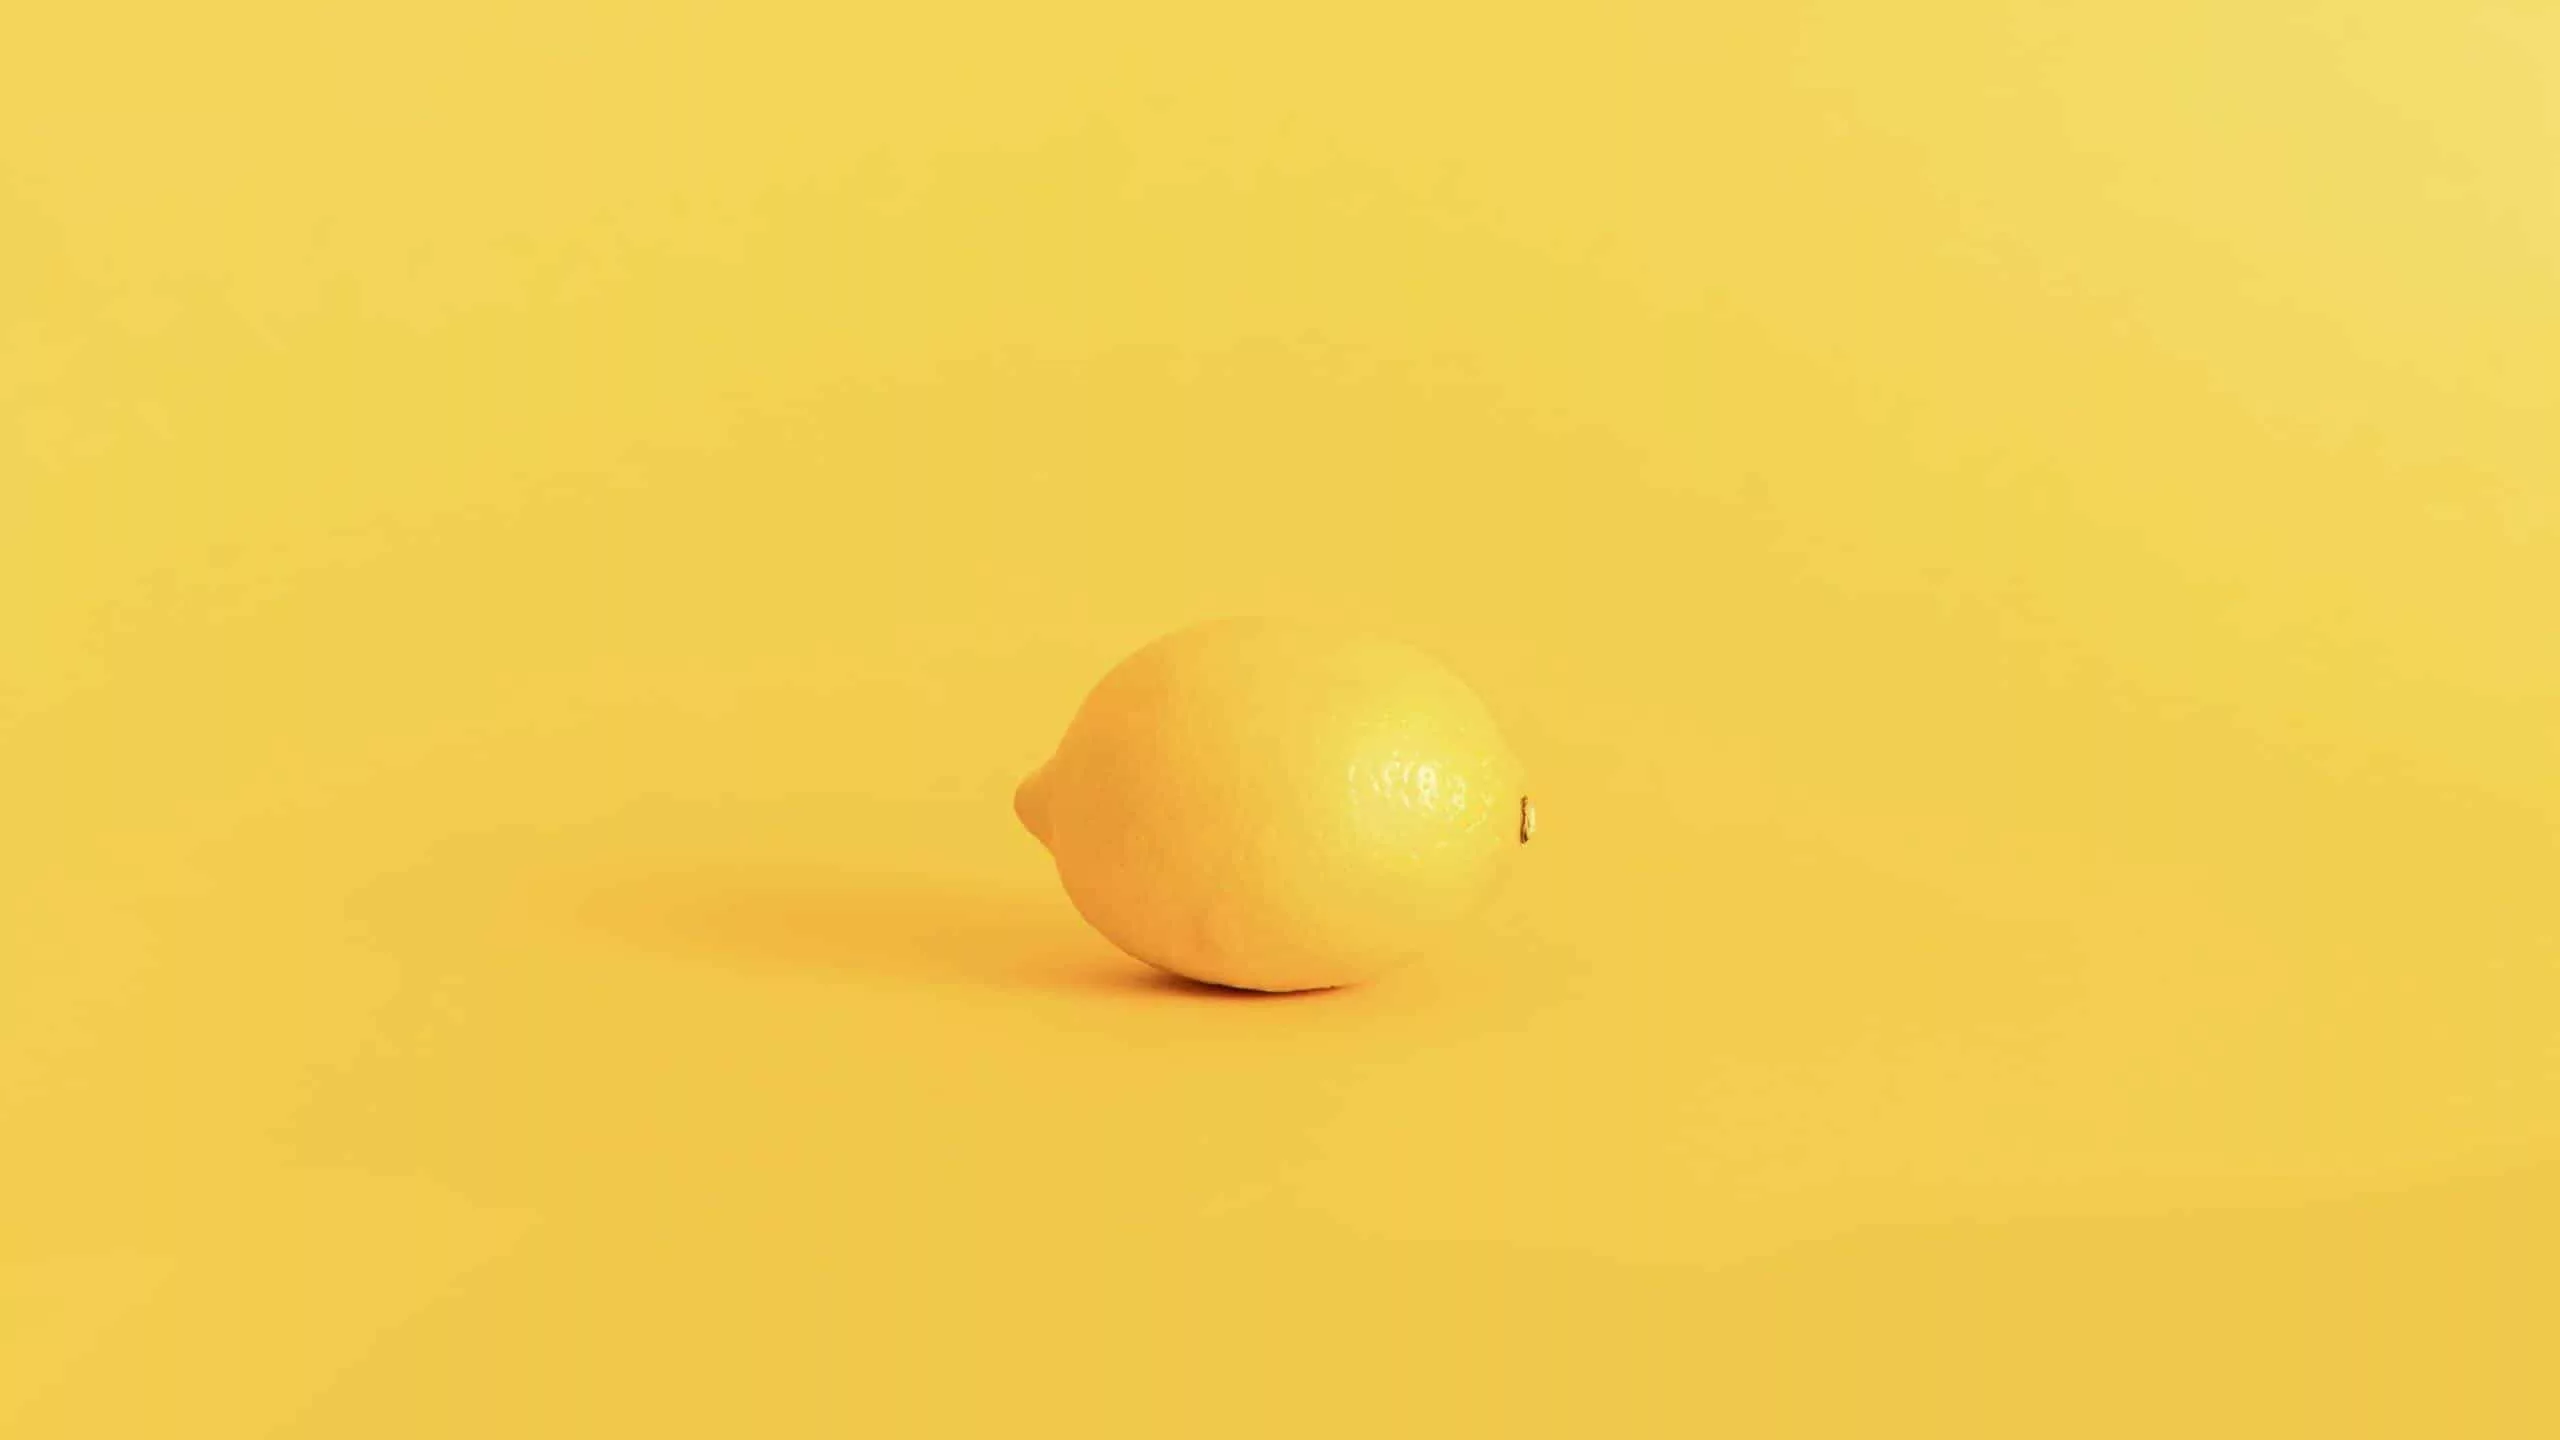 When Life Gives You Lemons – Make Lemonade!